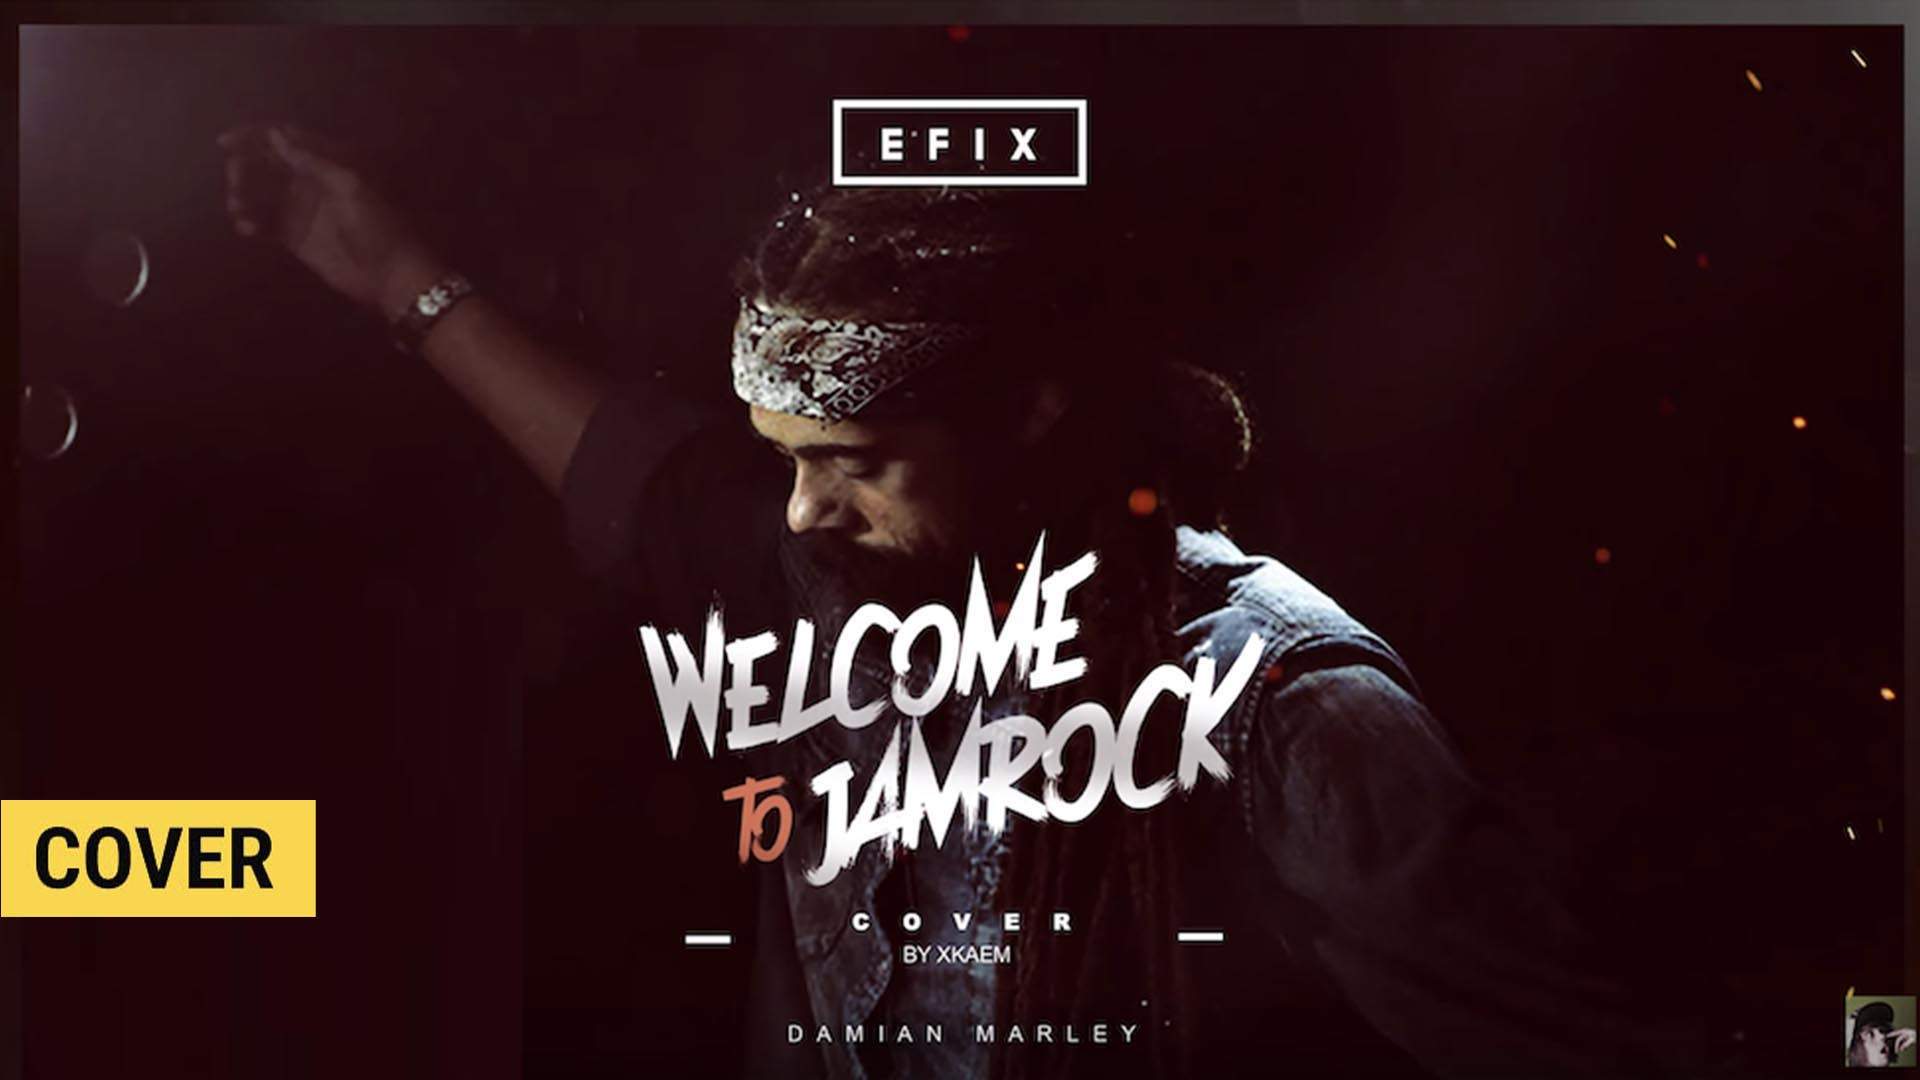 efix dj producteur musique welcome to jamrock